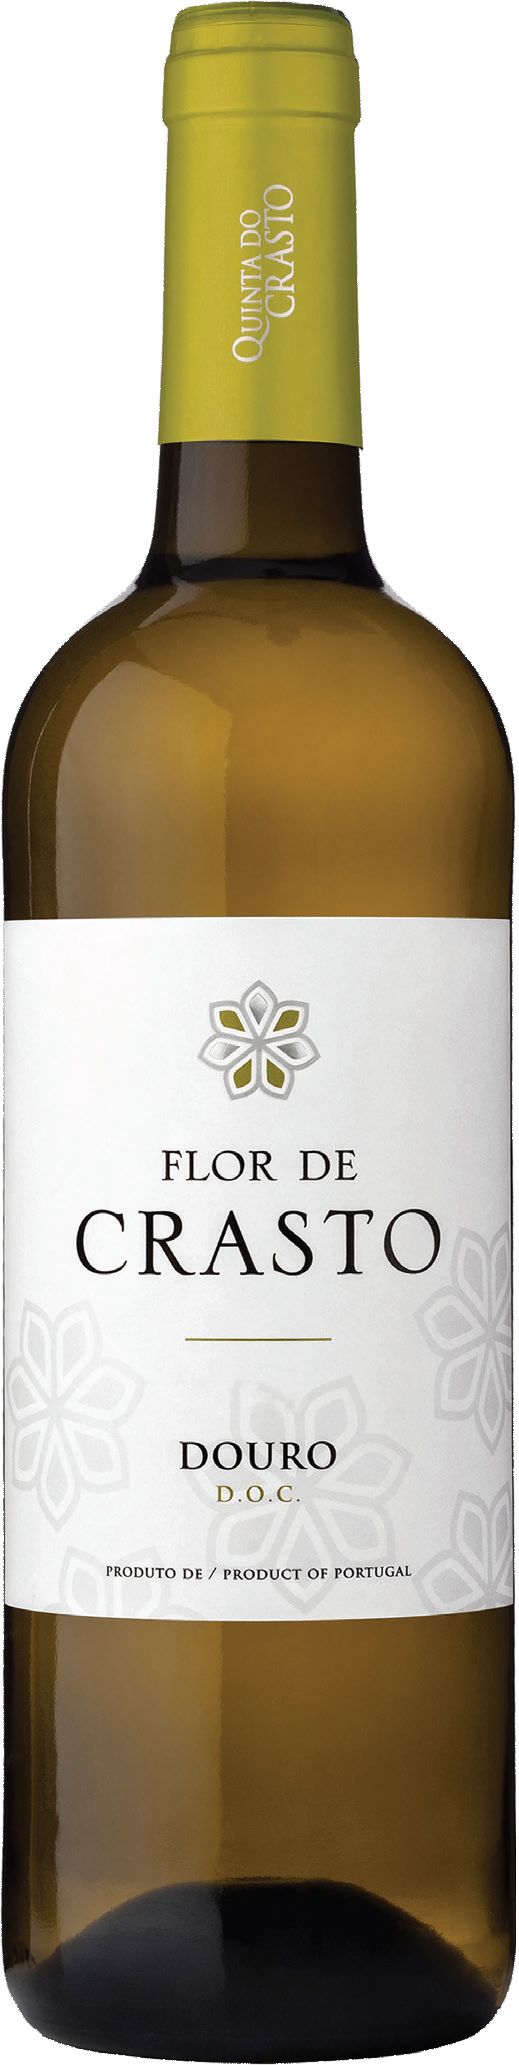 Quinta Do Crasto, Flor De Crasto Branco, 2019